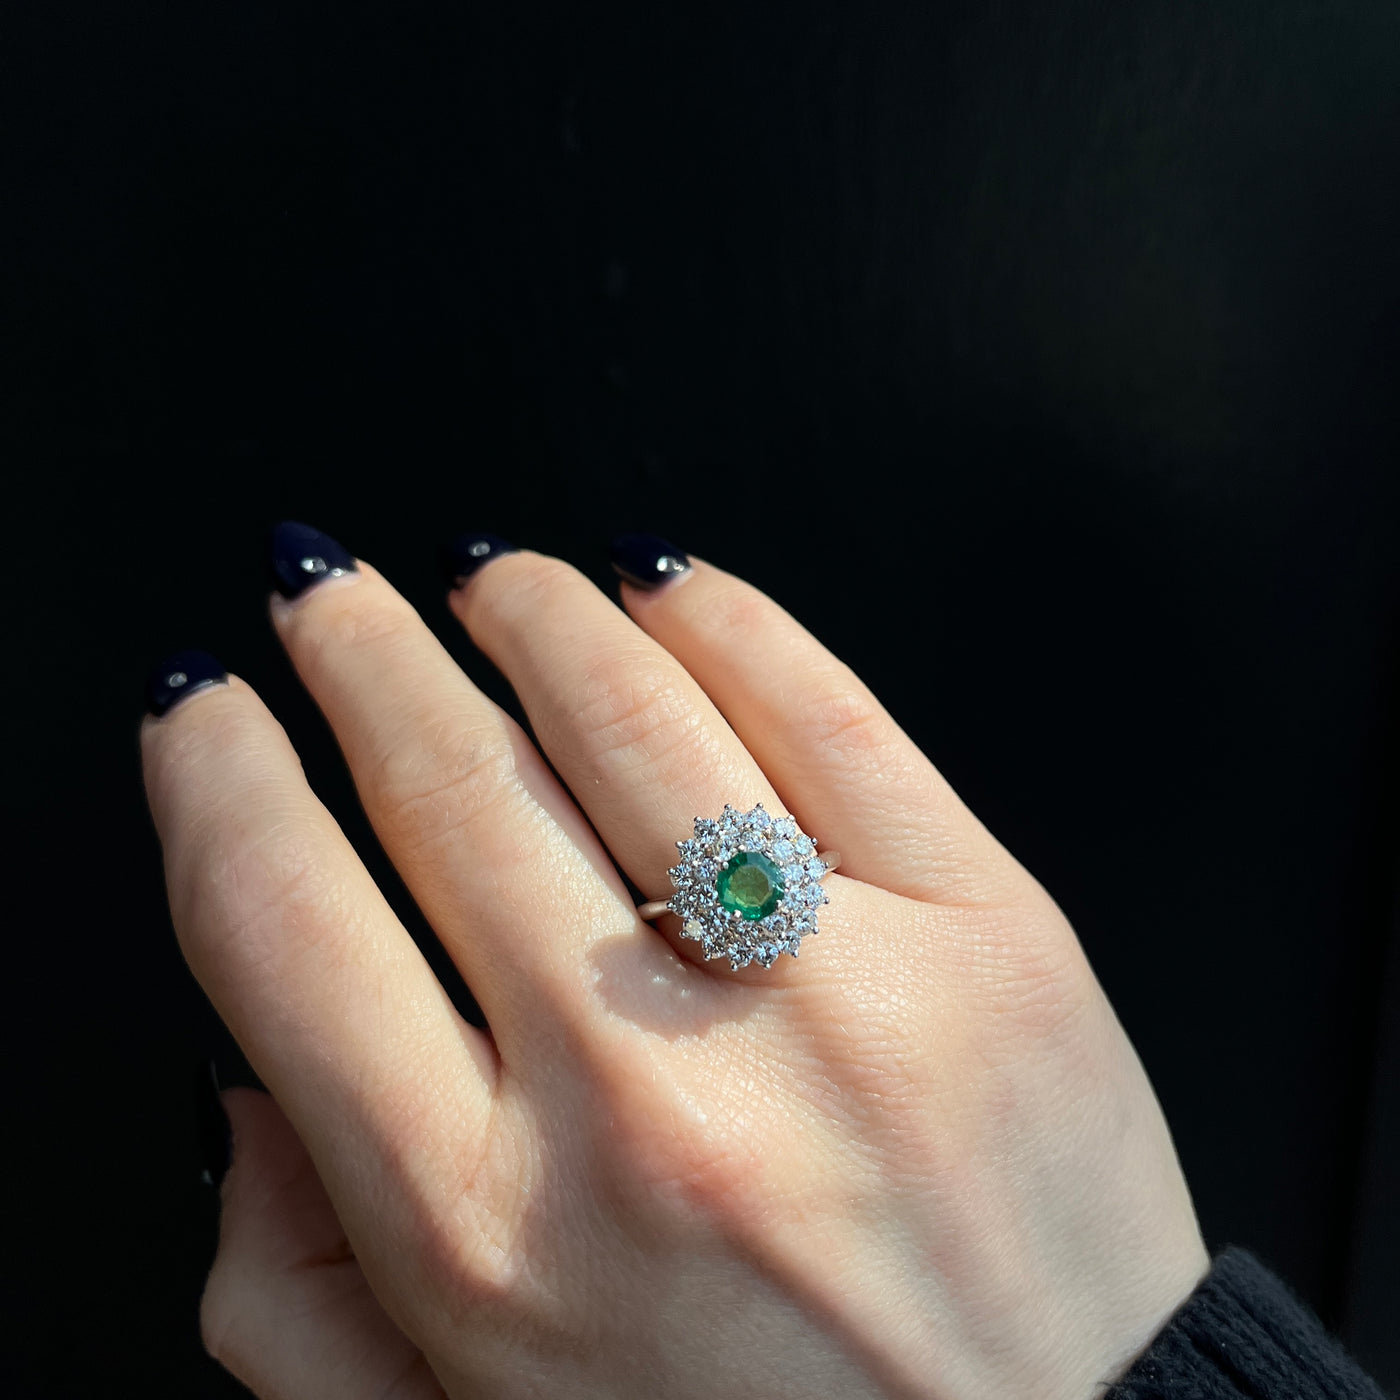 Estate Platinum 0.71 Carat Emerald and Diamond Ring